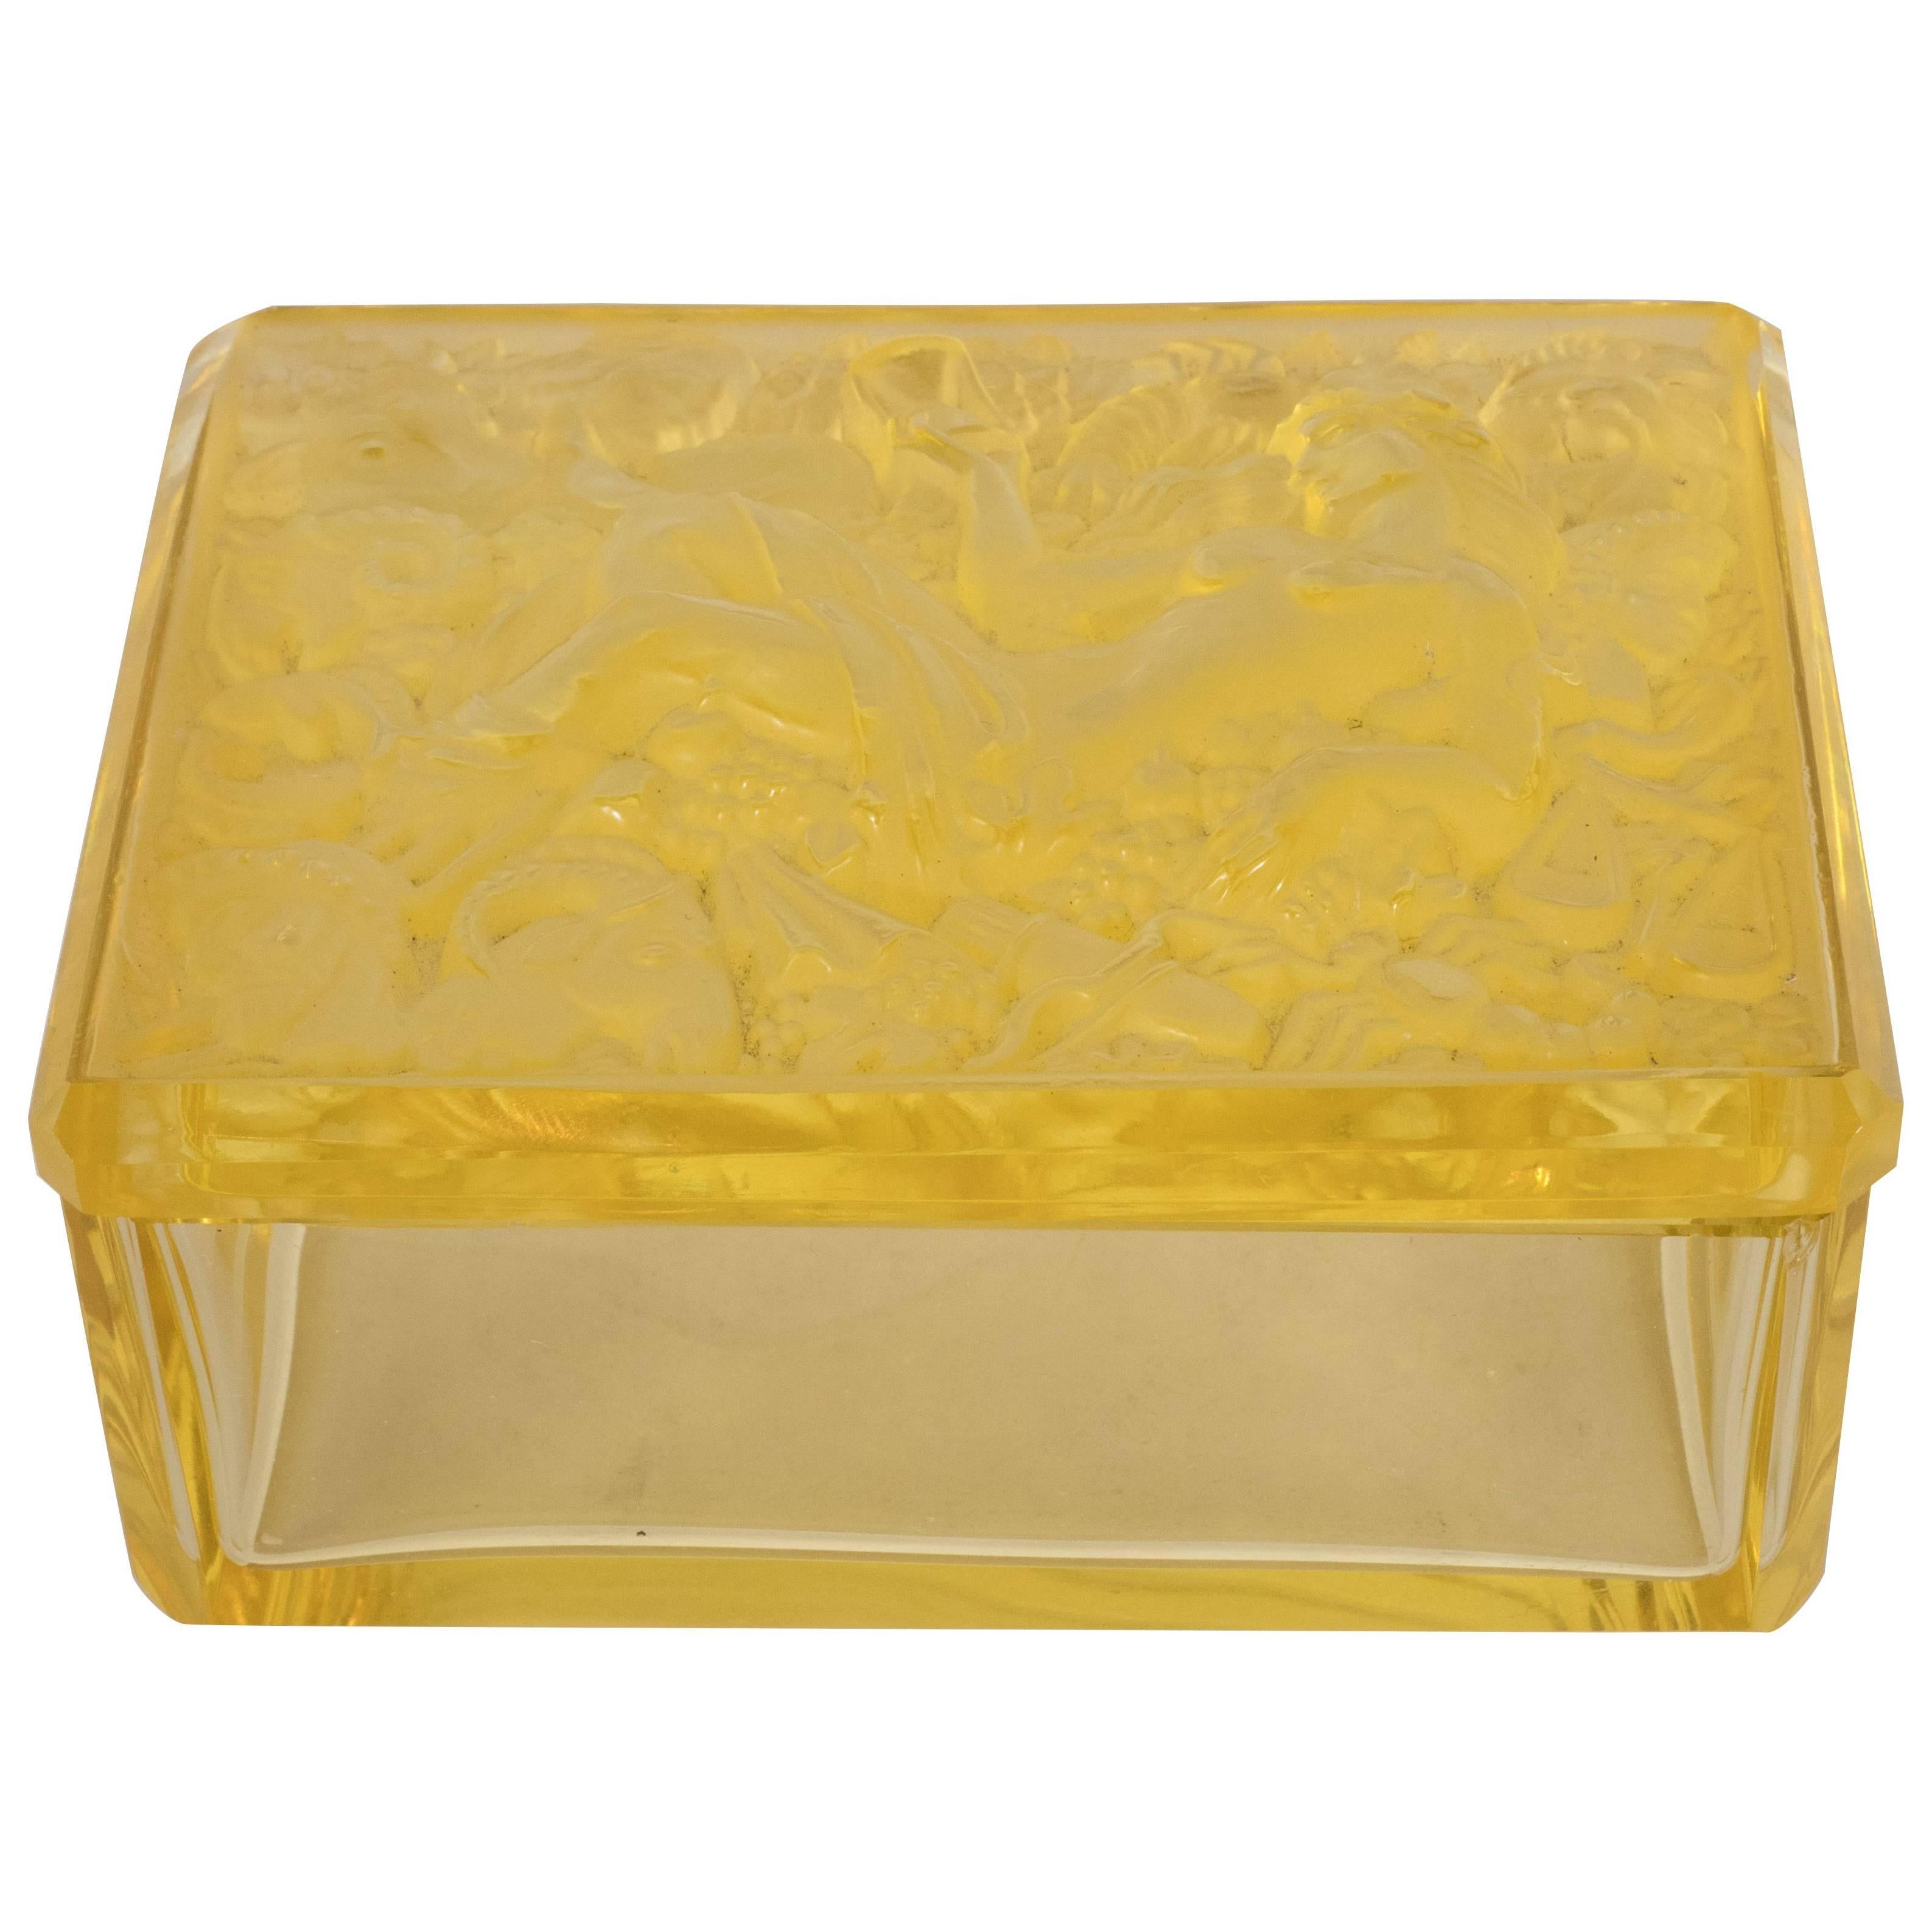 French Art Deco Citrine Glass Box with Raised Zodiac Motifs